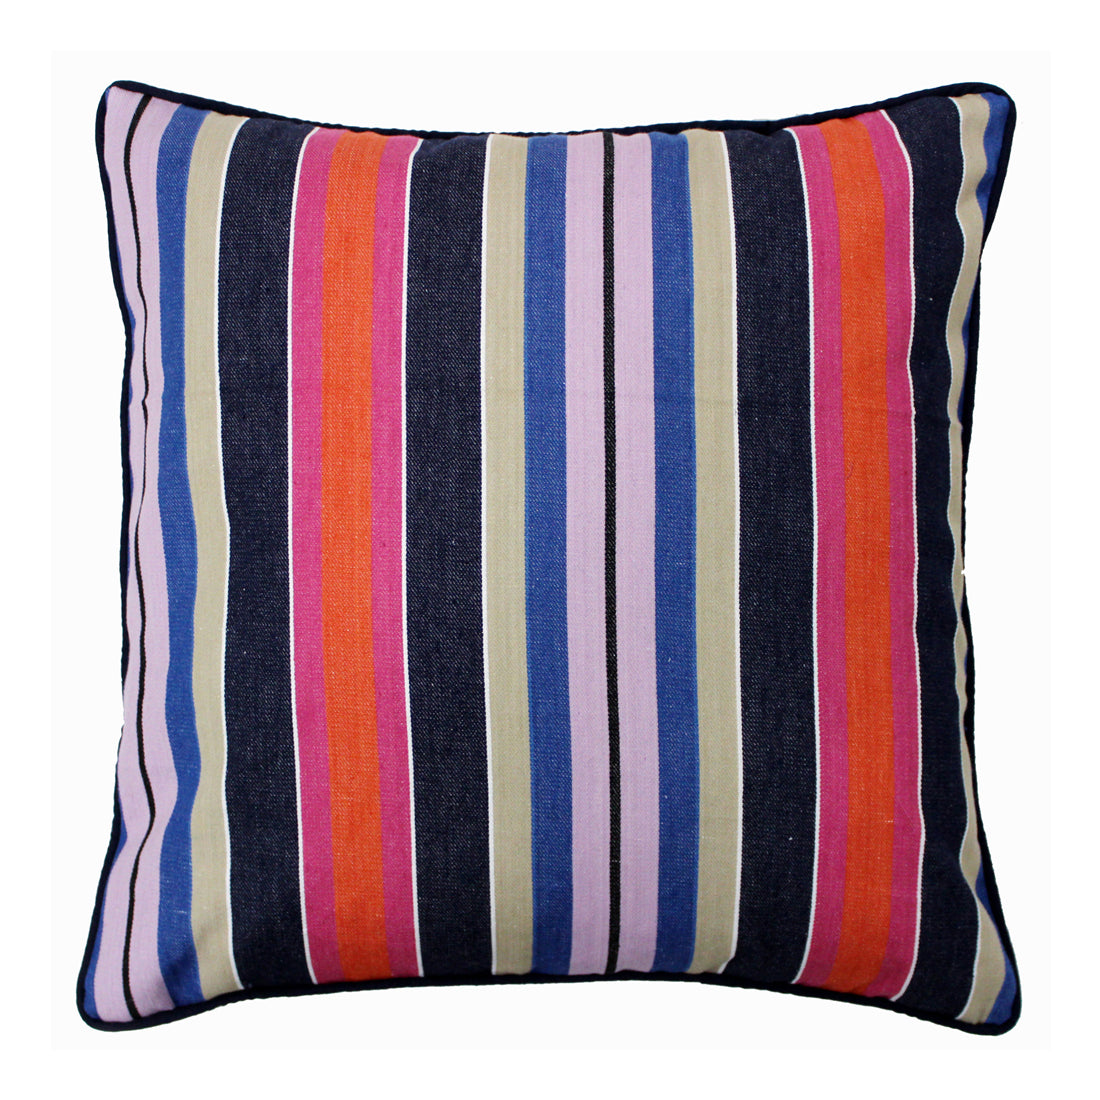 ALPHA Woven Cotton Stripes 2 Pcs Cushion Cover set - Blue